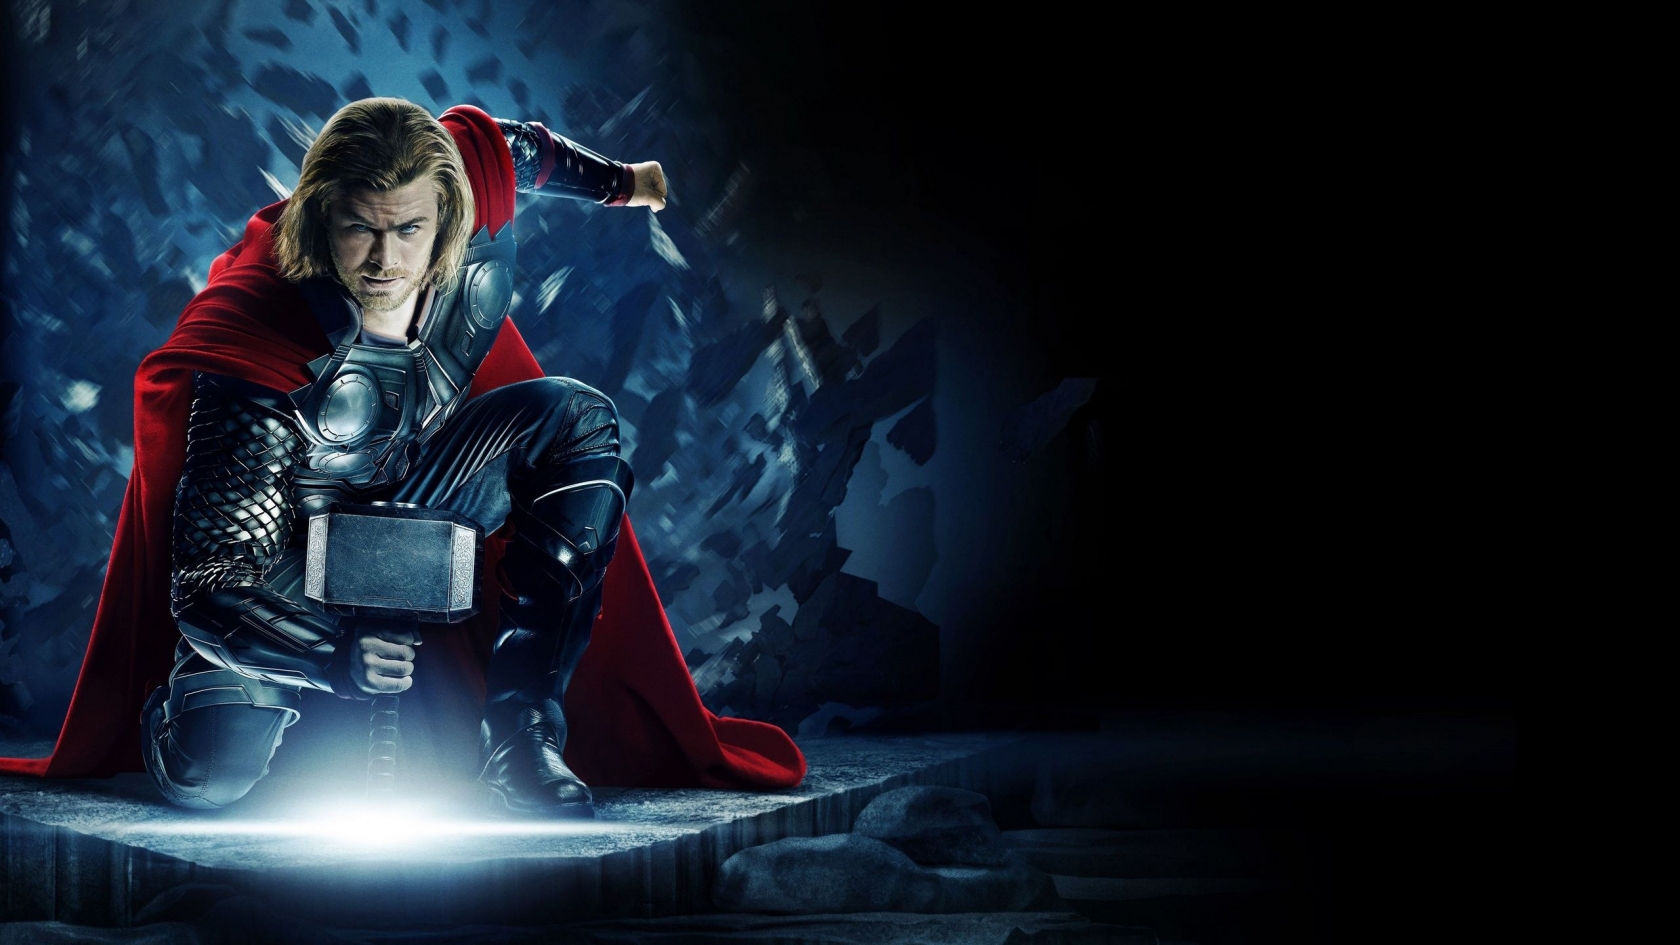 Thor Avengers for 1680 x 945 HDTV resolution